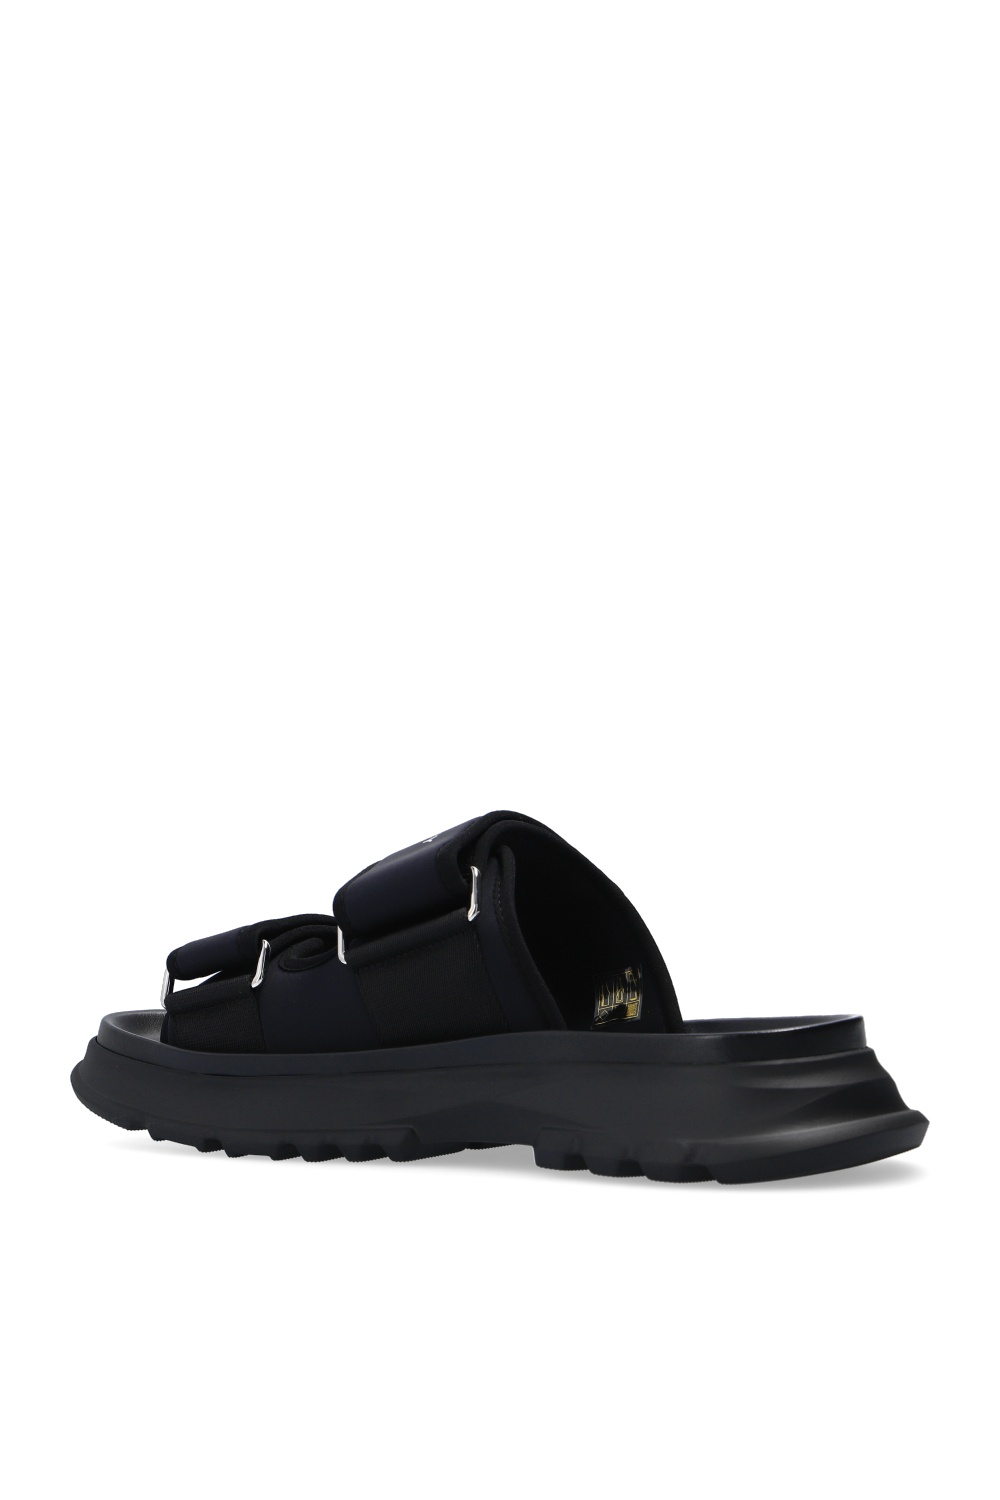 Kendall Jenner Grey Slide On Sandal Street Style 2021